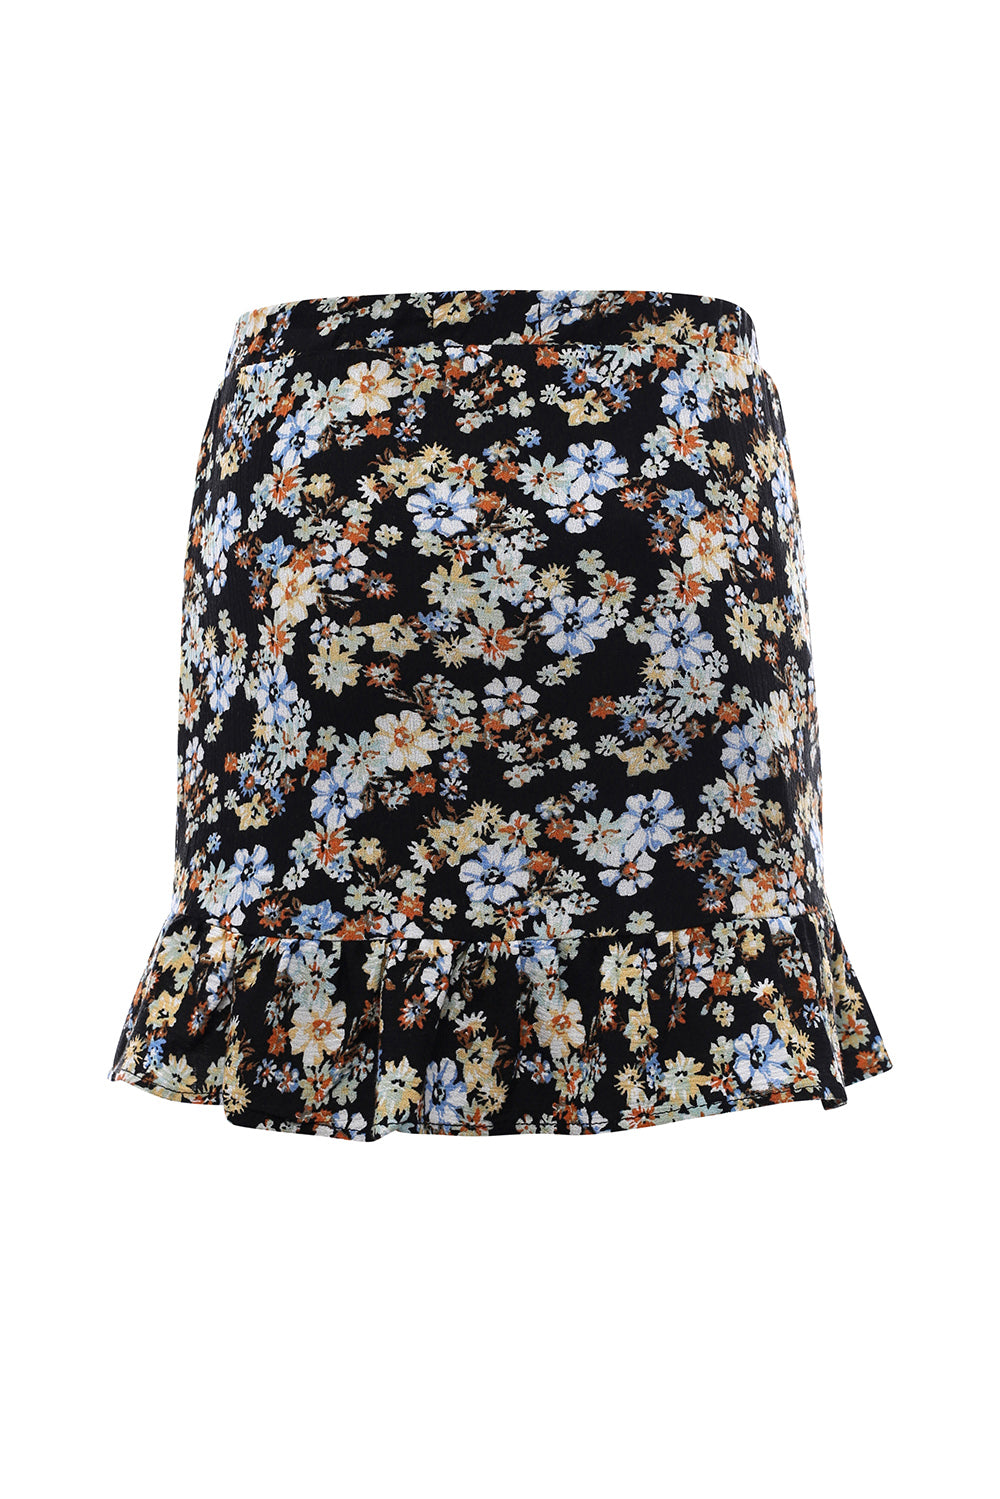 LOOXS 10sixteen Flower Skirt